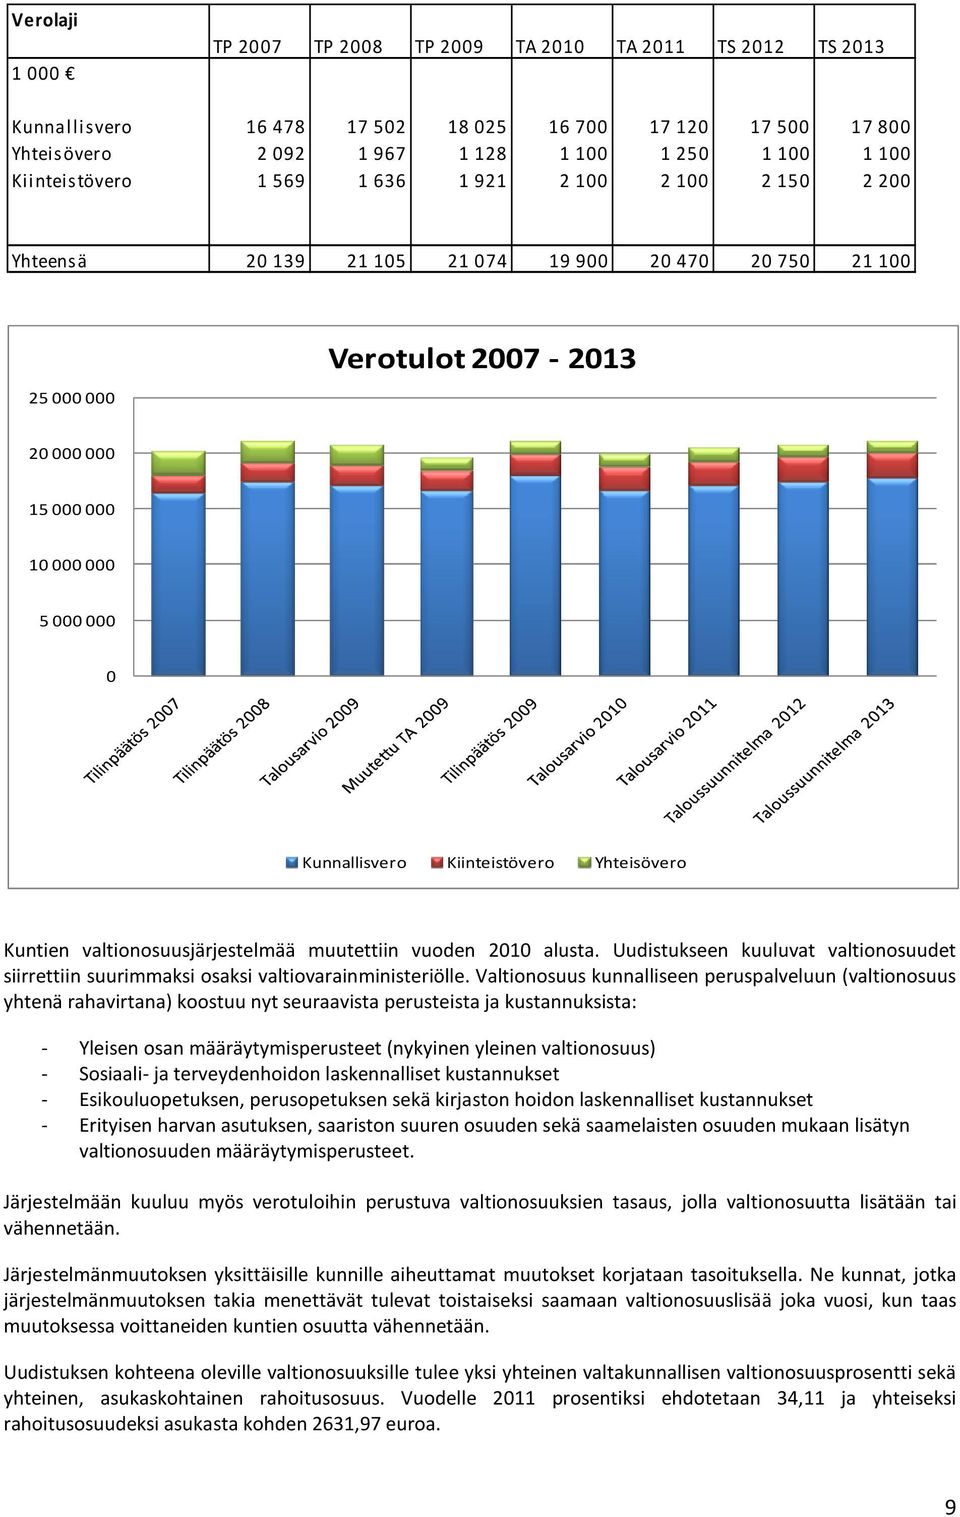 Kunnallisvero Kiinteistövero Yhteisövero Kuntien valtionosuusjärjestelmää muutettiin vuoden 2010 alusta. Uudistukseen kuuluvat valtionosuudet siirrettiin suurimmaksi osaksi valtiovarainministeriölle.